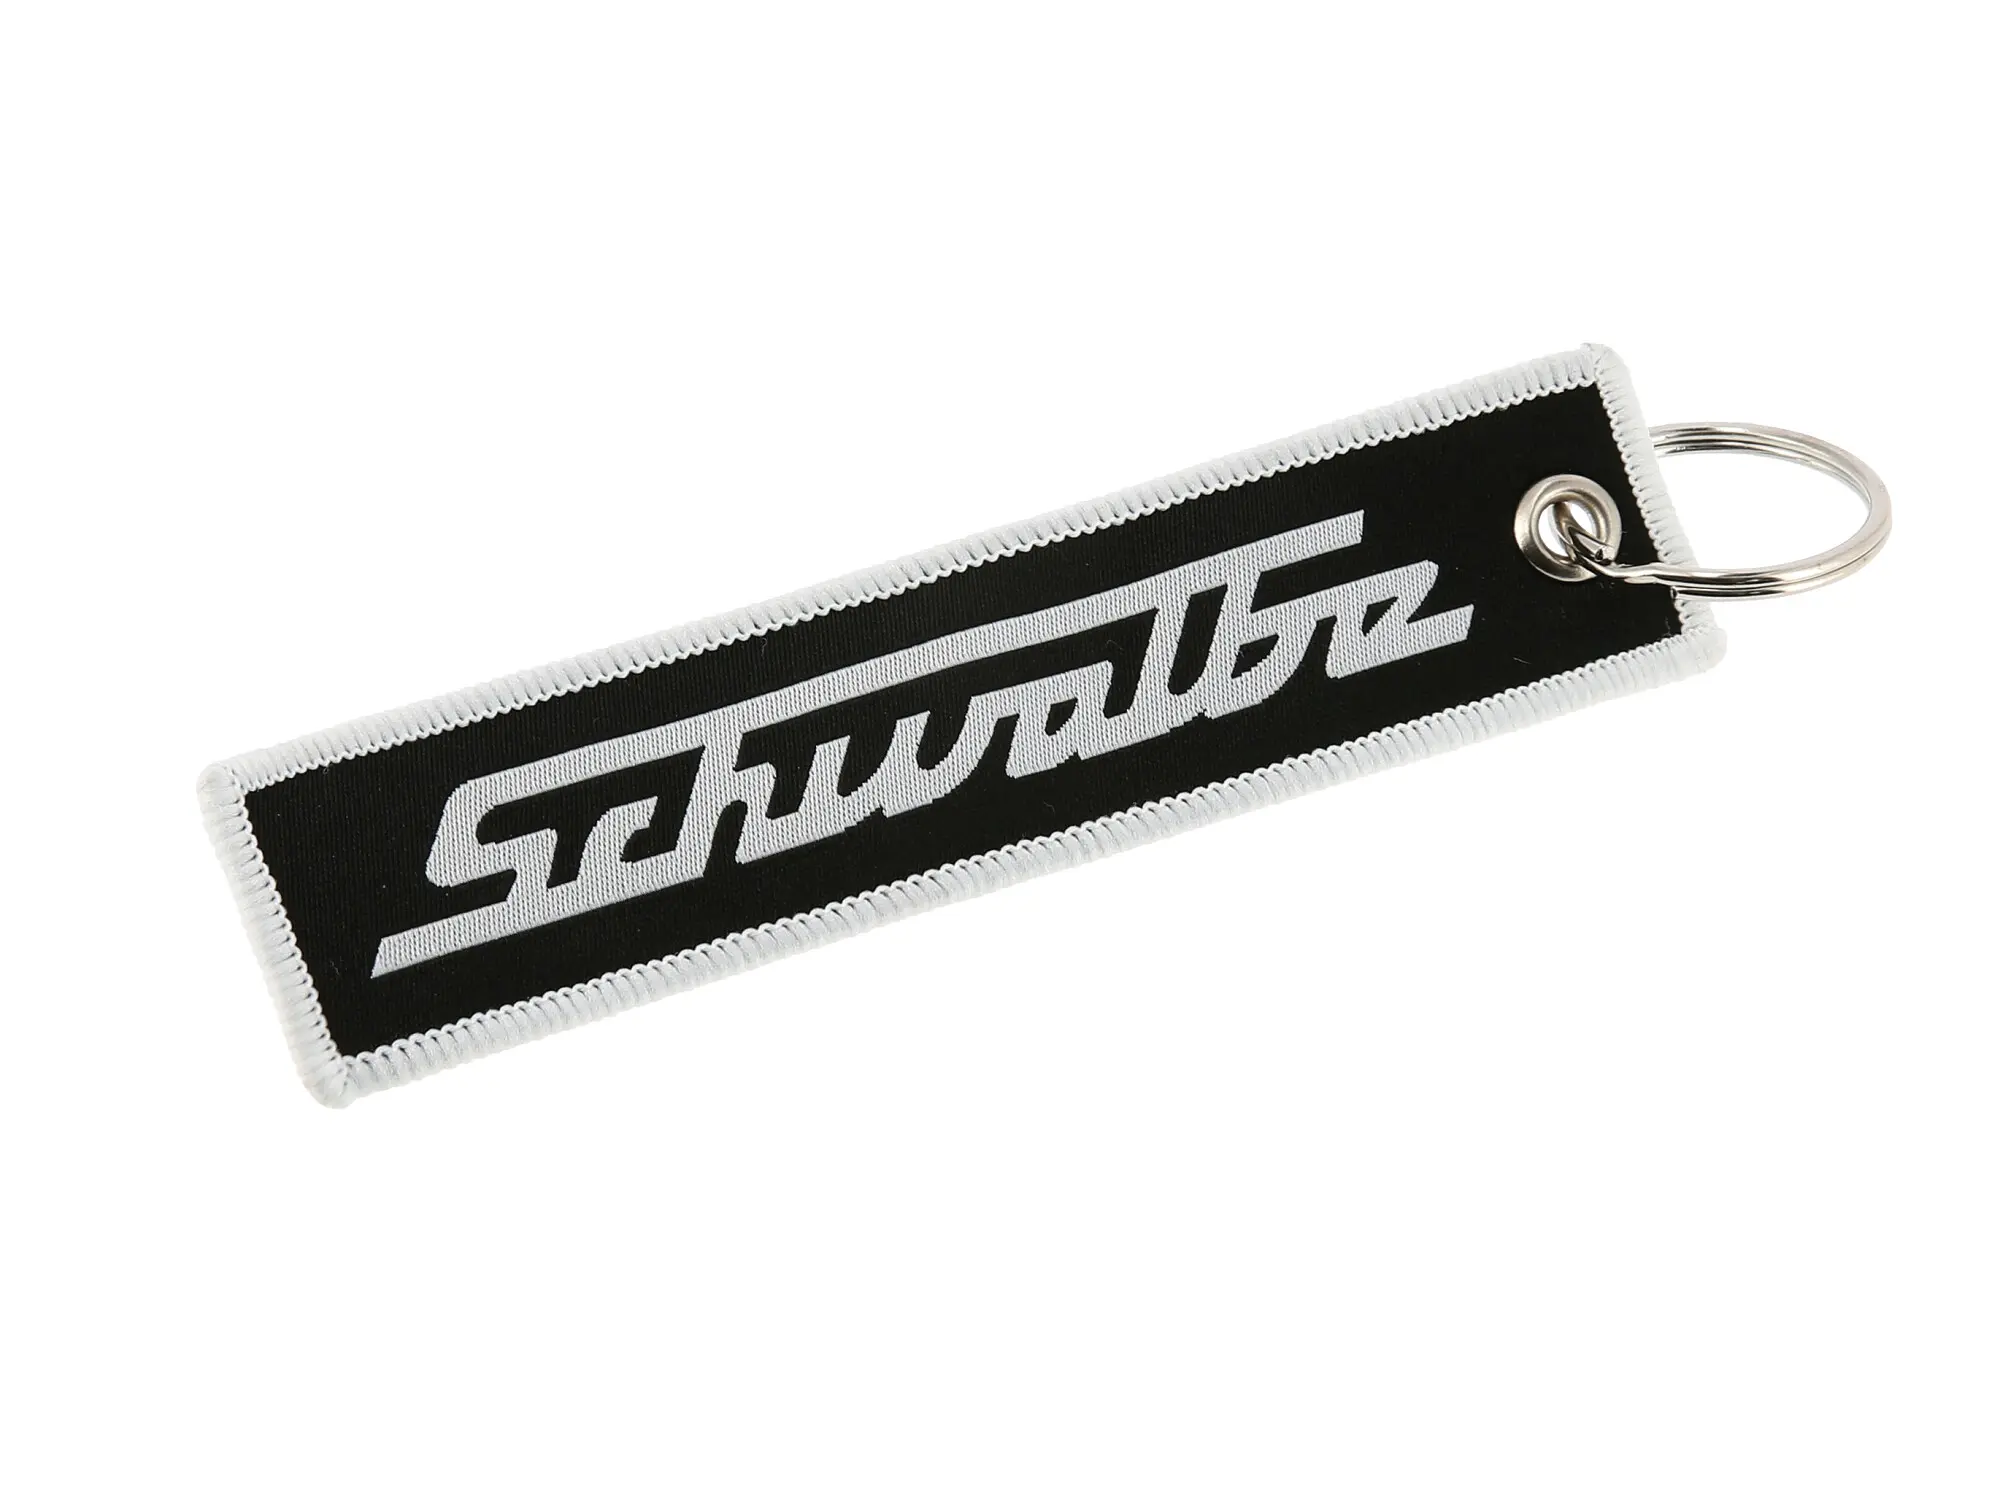 Schlüsselanhänger "Schwalbe", aus Stoff, Art.-Nr.: 10070856 - Bild 1